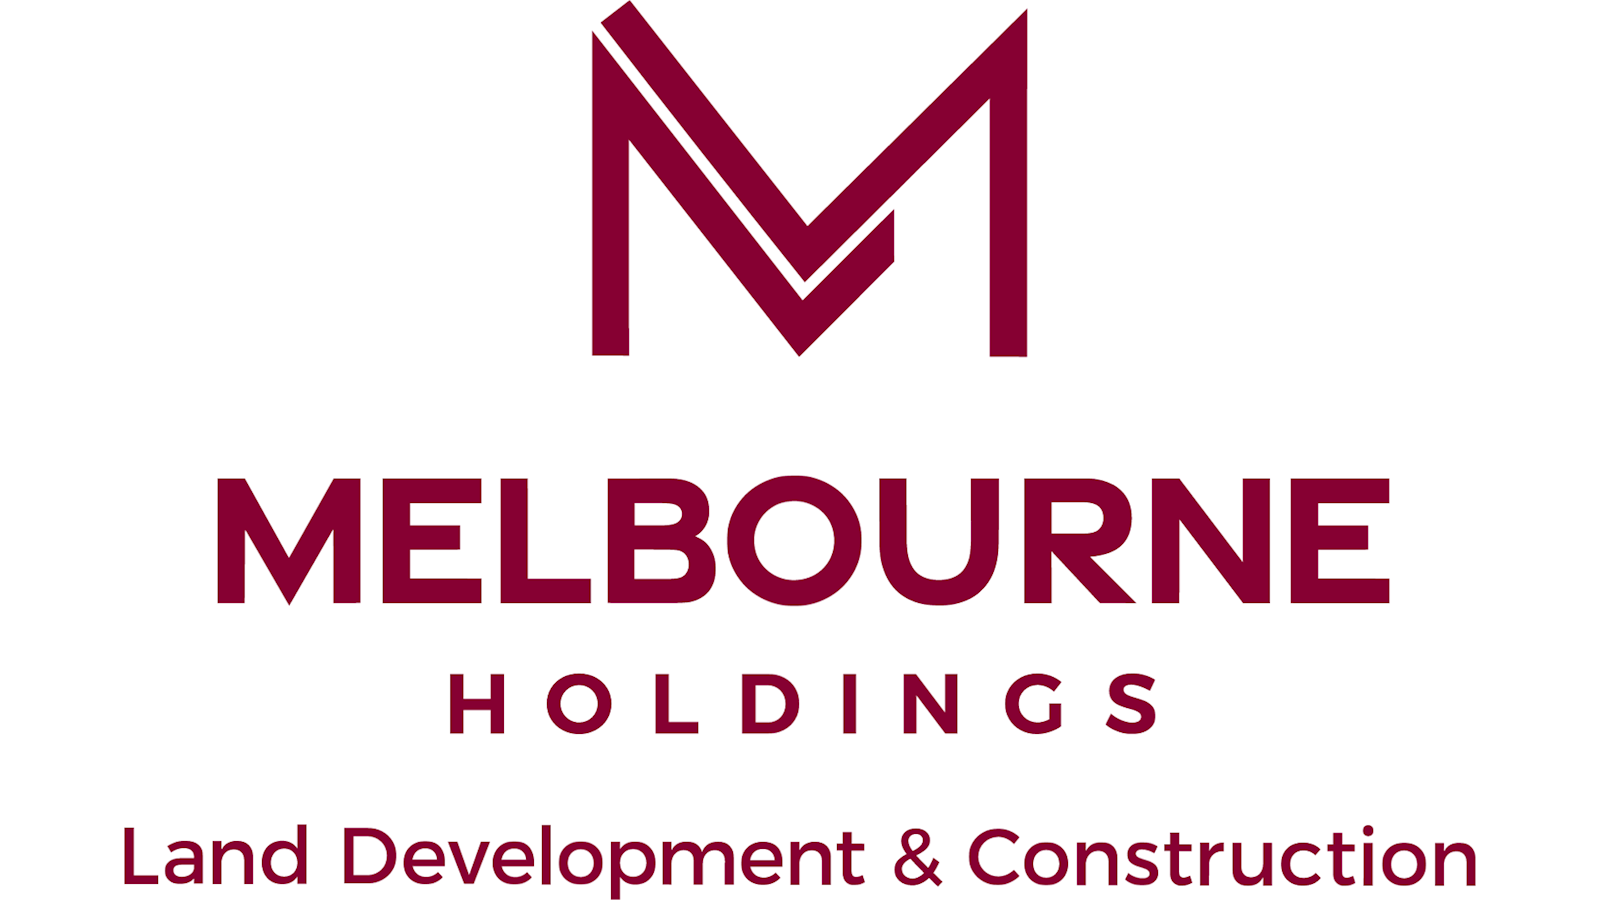 Melbourne Holdings Land Development & Construction